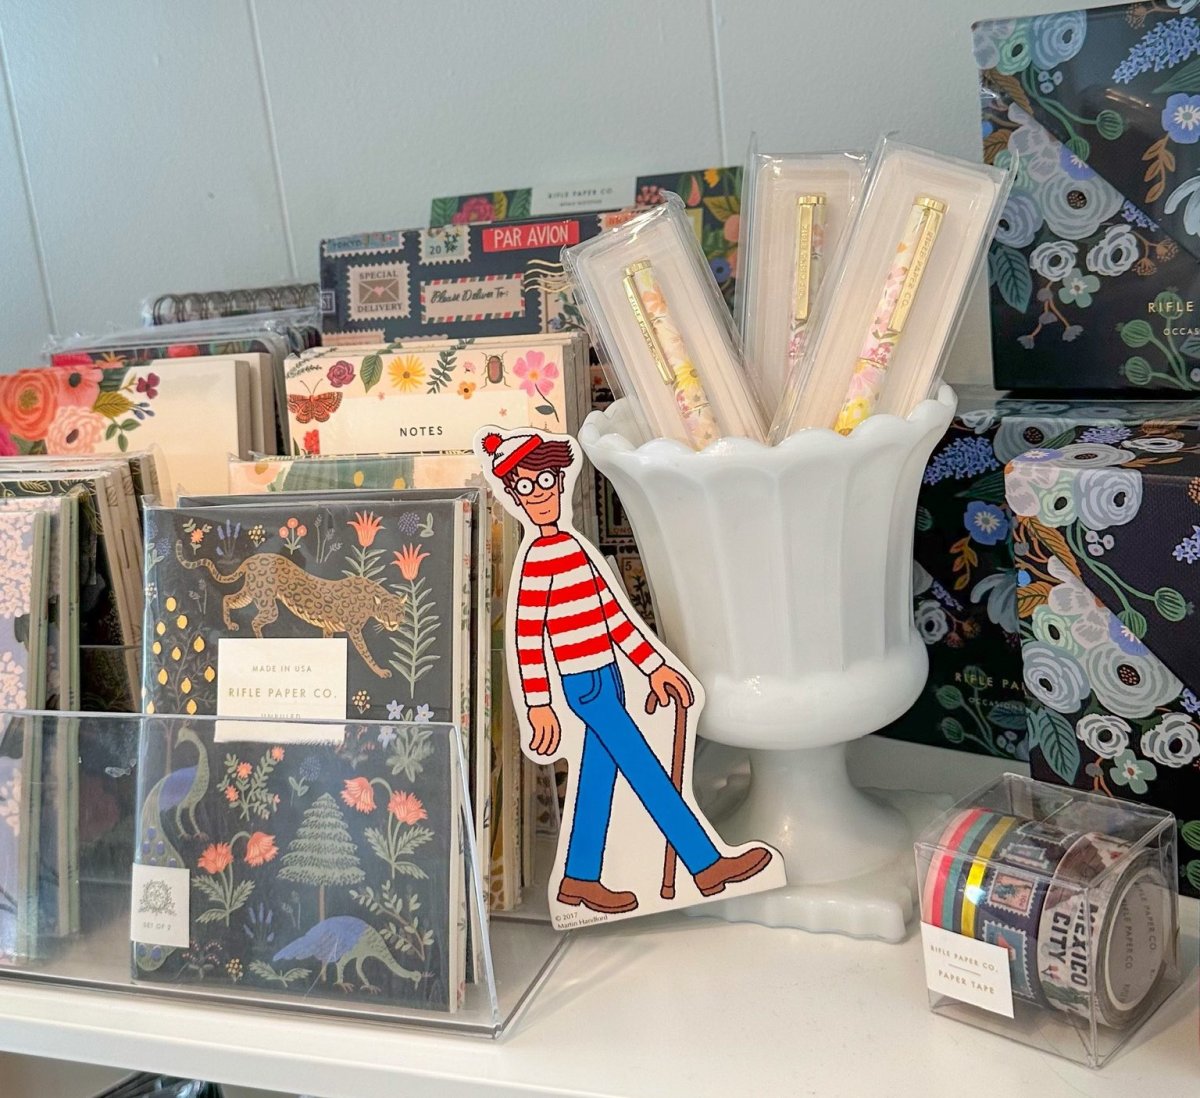 Waldo in a shop in Edmonds